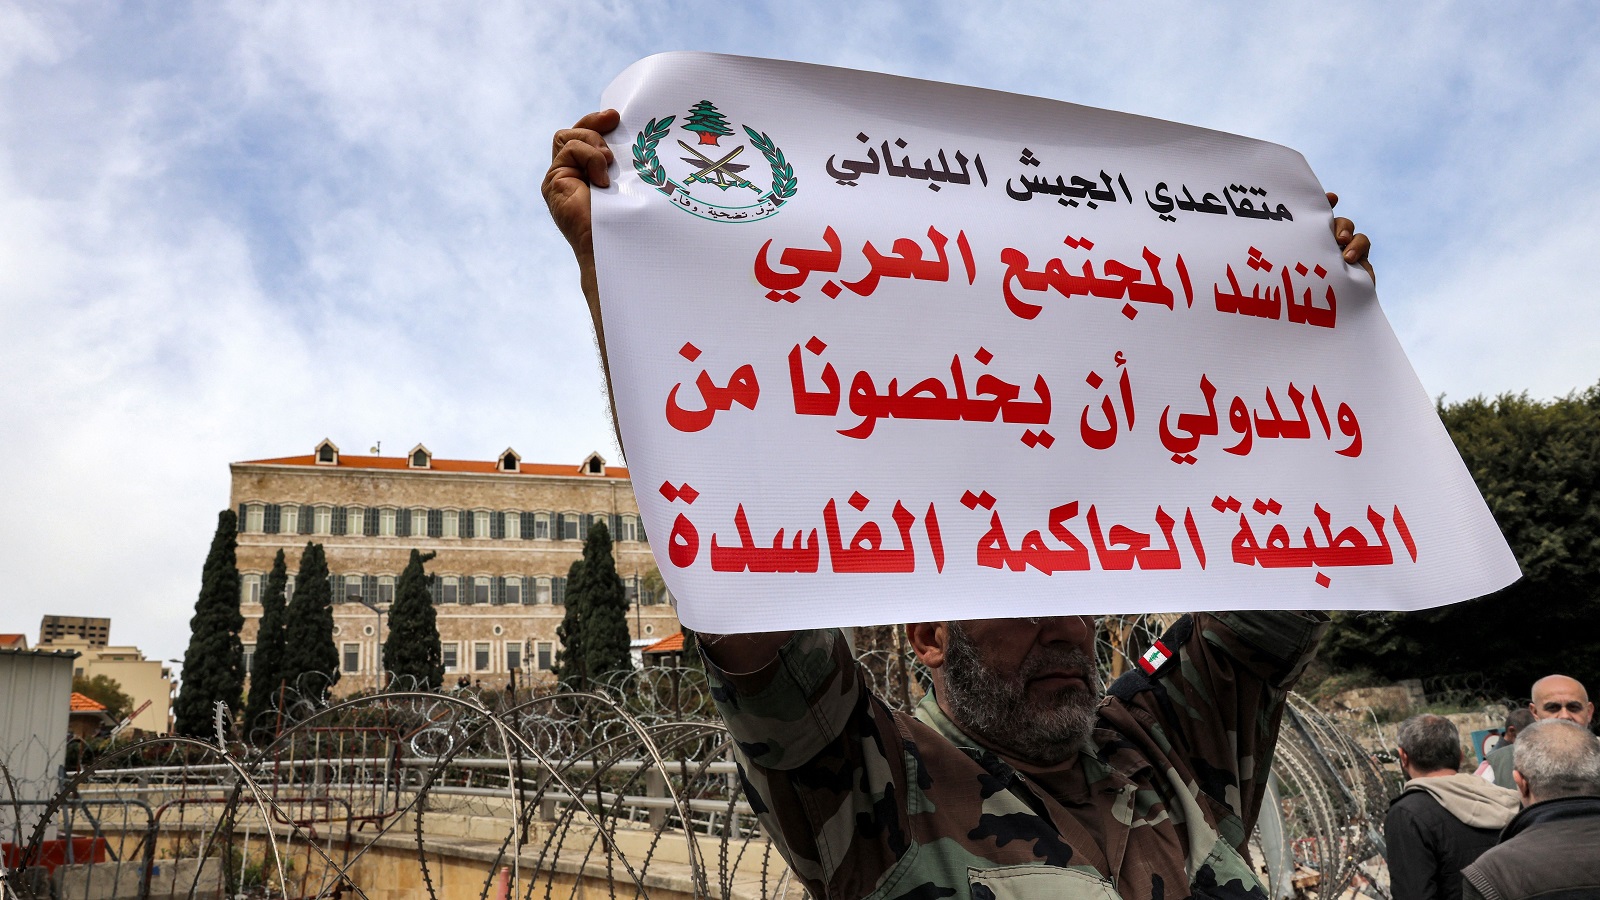 العودة الخليجية إلى لبنان و"التطبيع" مع الأسد: الفارق كبير